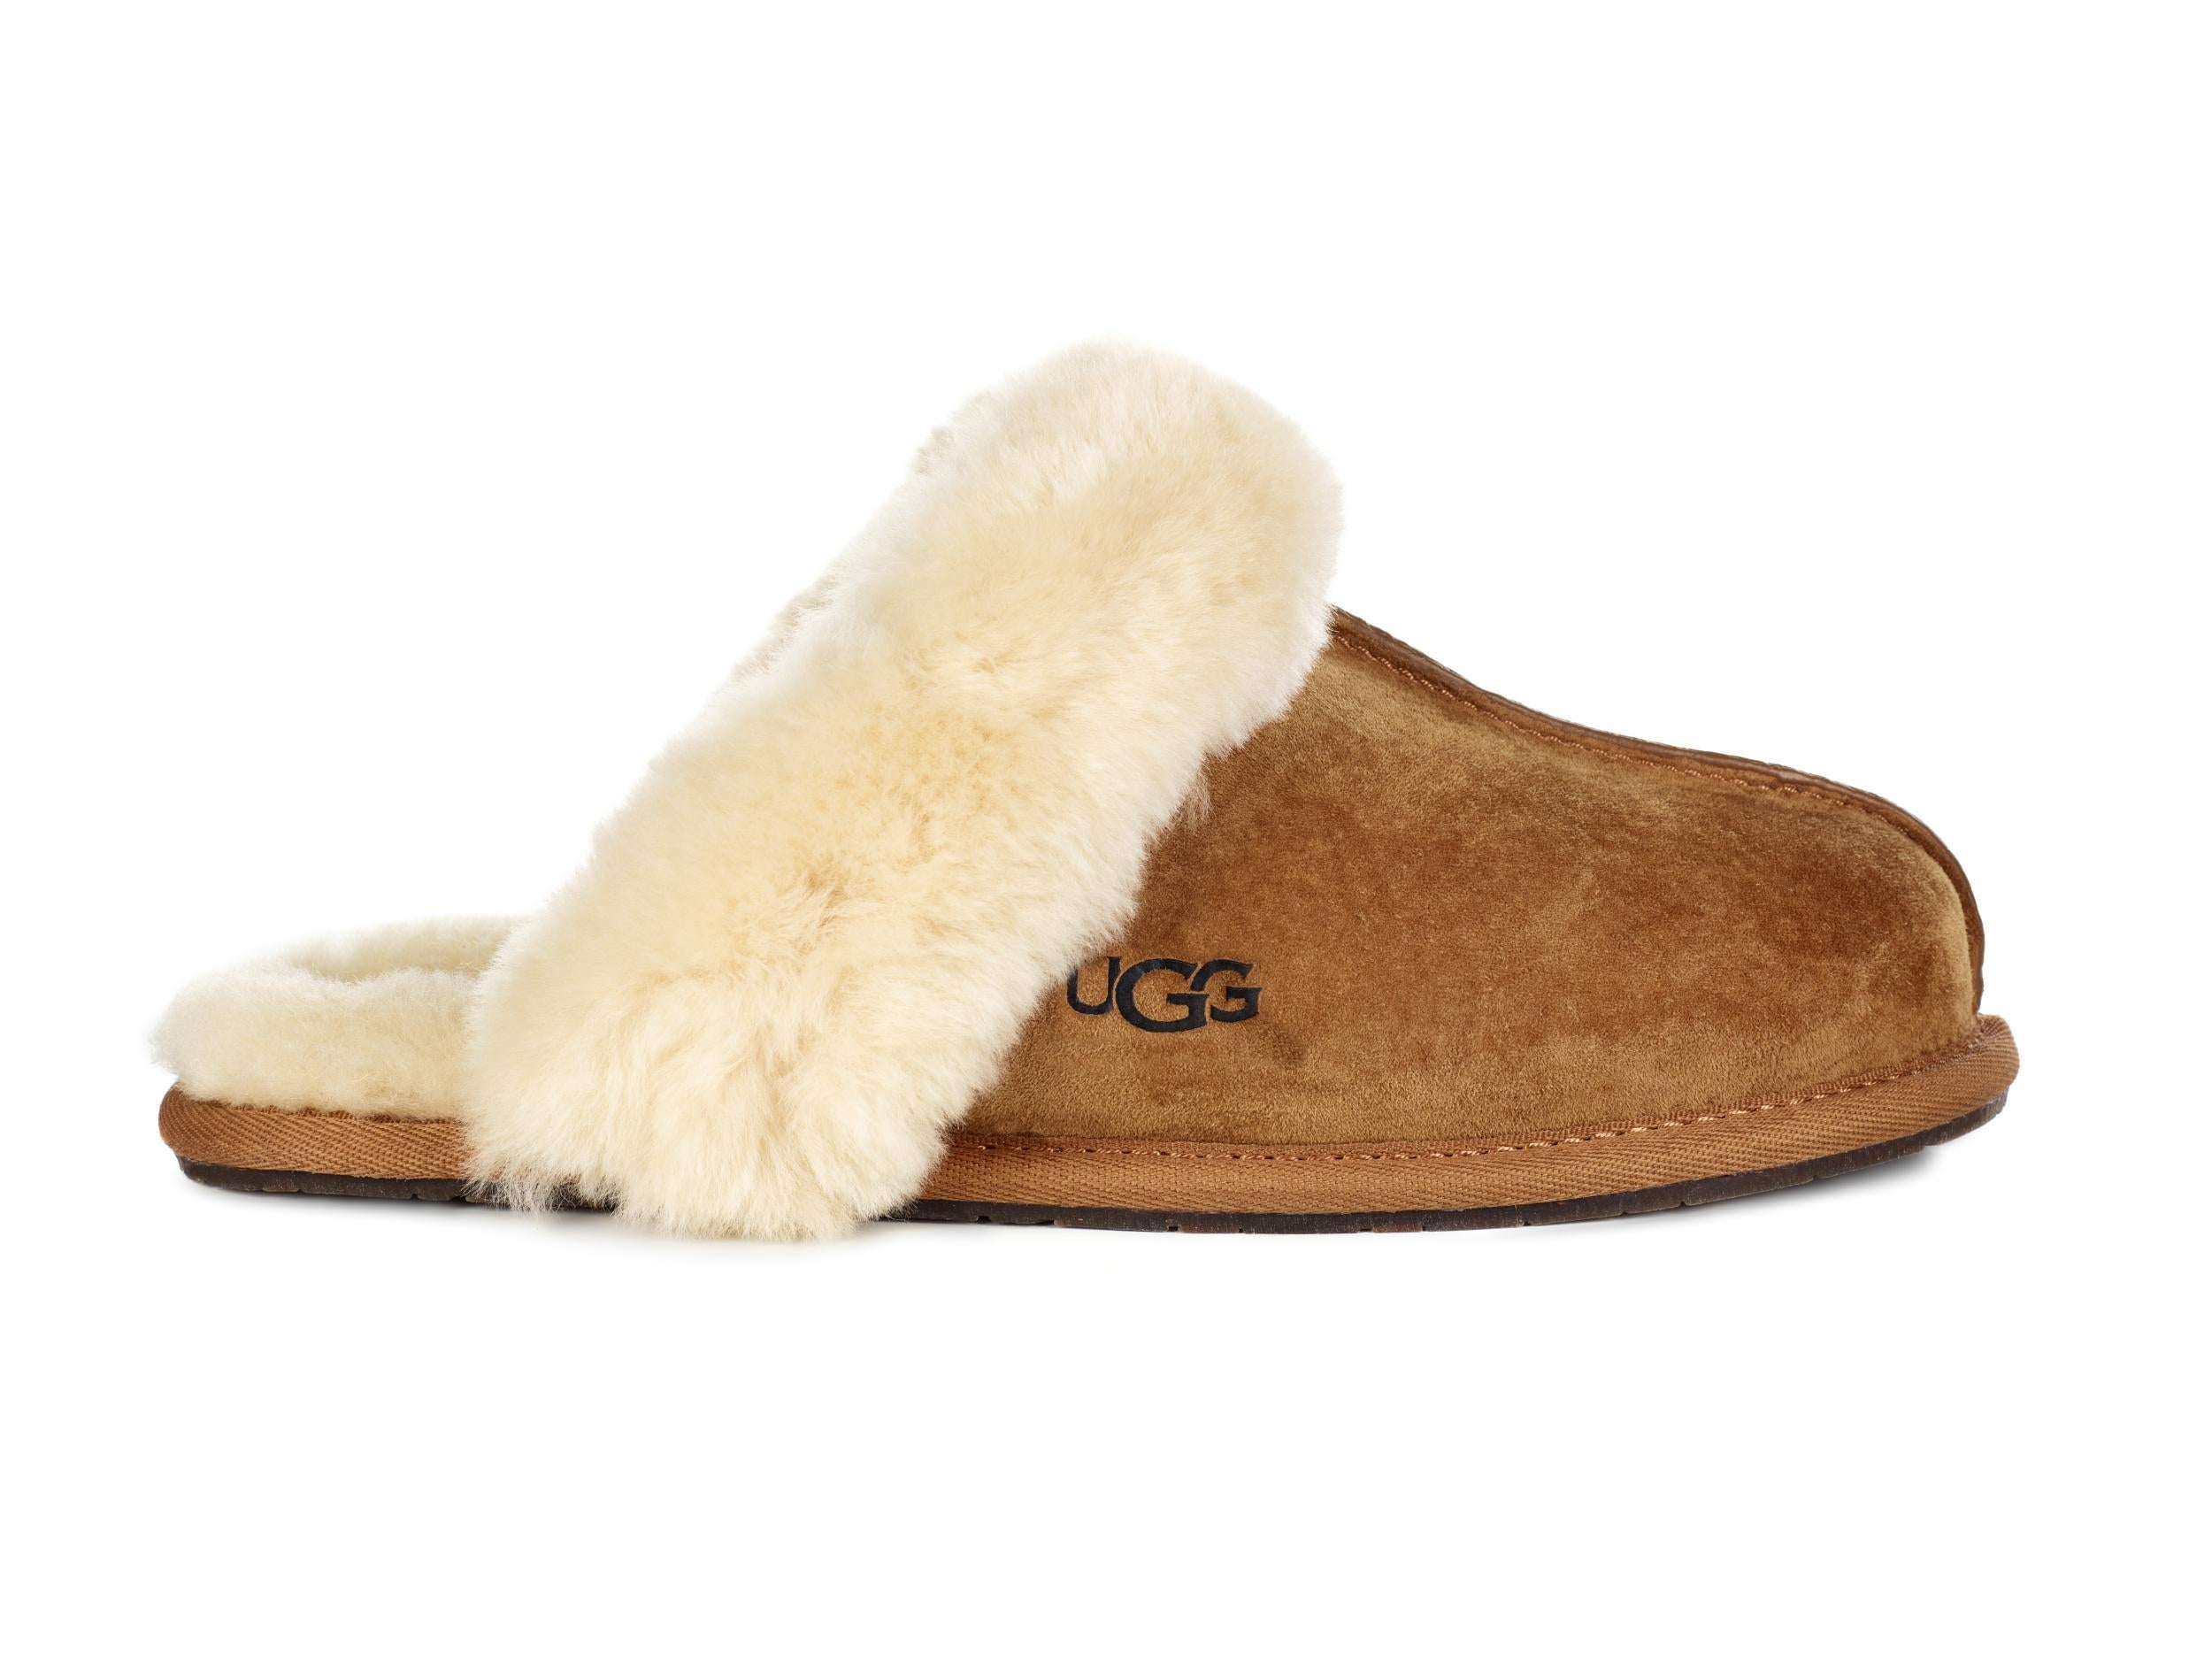 buy slippers online uk